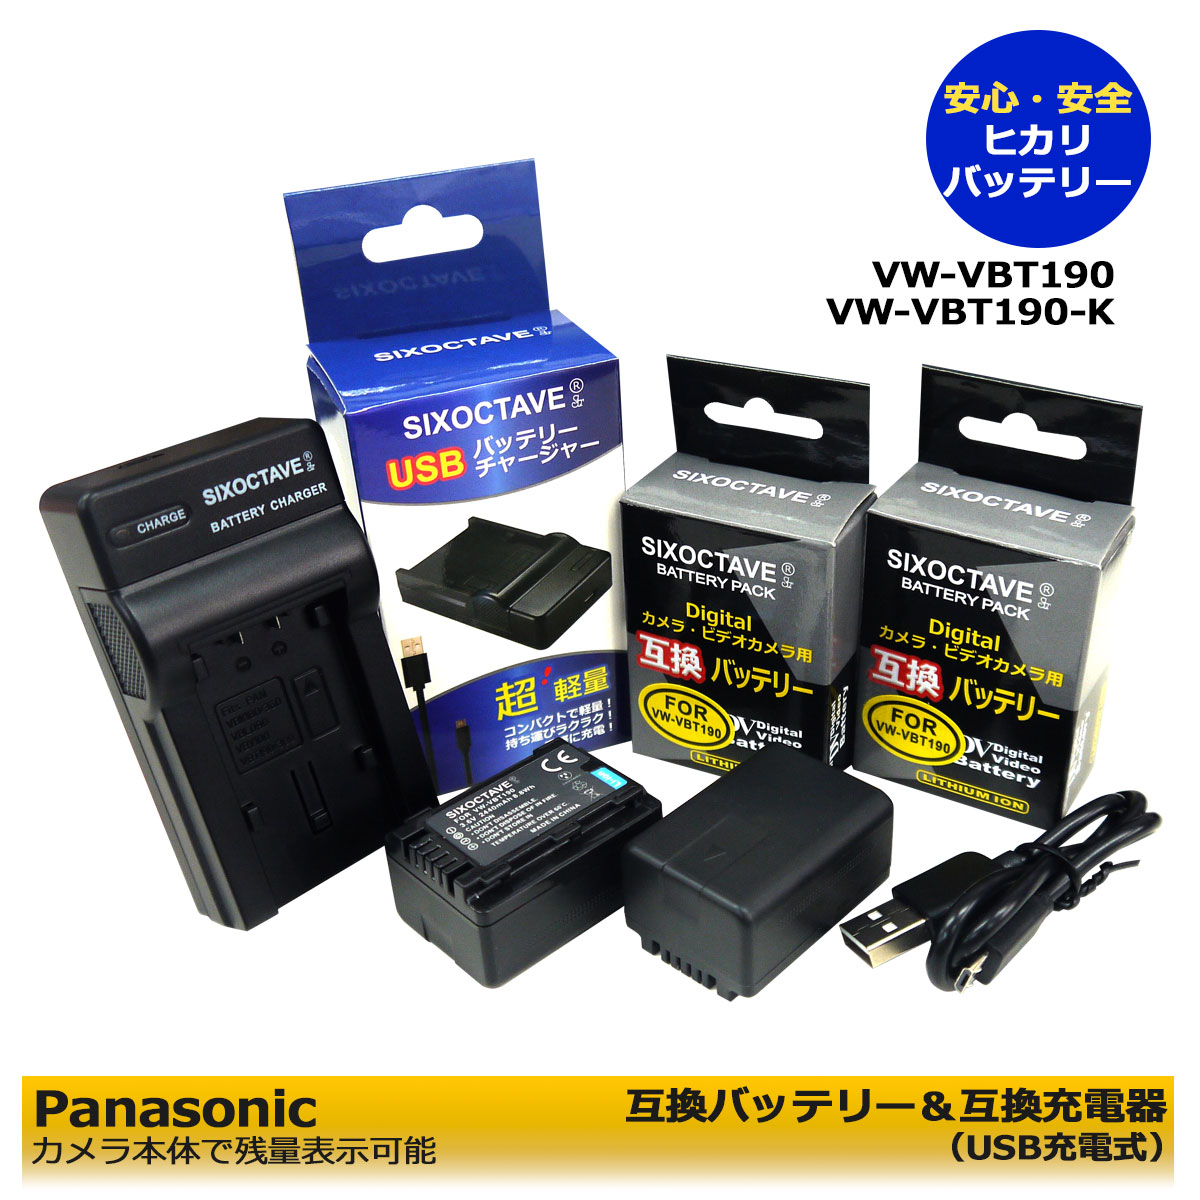 VW-VBT190/ VW-VBT190-K【送料無料】Panasonic 互換バッテリー 2個と 互換充電器 （USB充電式）1個の3点セット VW-BC10-K HC-V210M / HC-V230M / HC-V360M / HC-V480M / HC-V520M / HC-V550M / HC-V620M / HC-V720M / HC-V750M HC-V330M HC-VX992MS HC-VX2MS